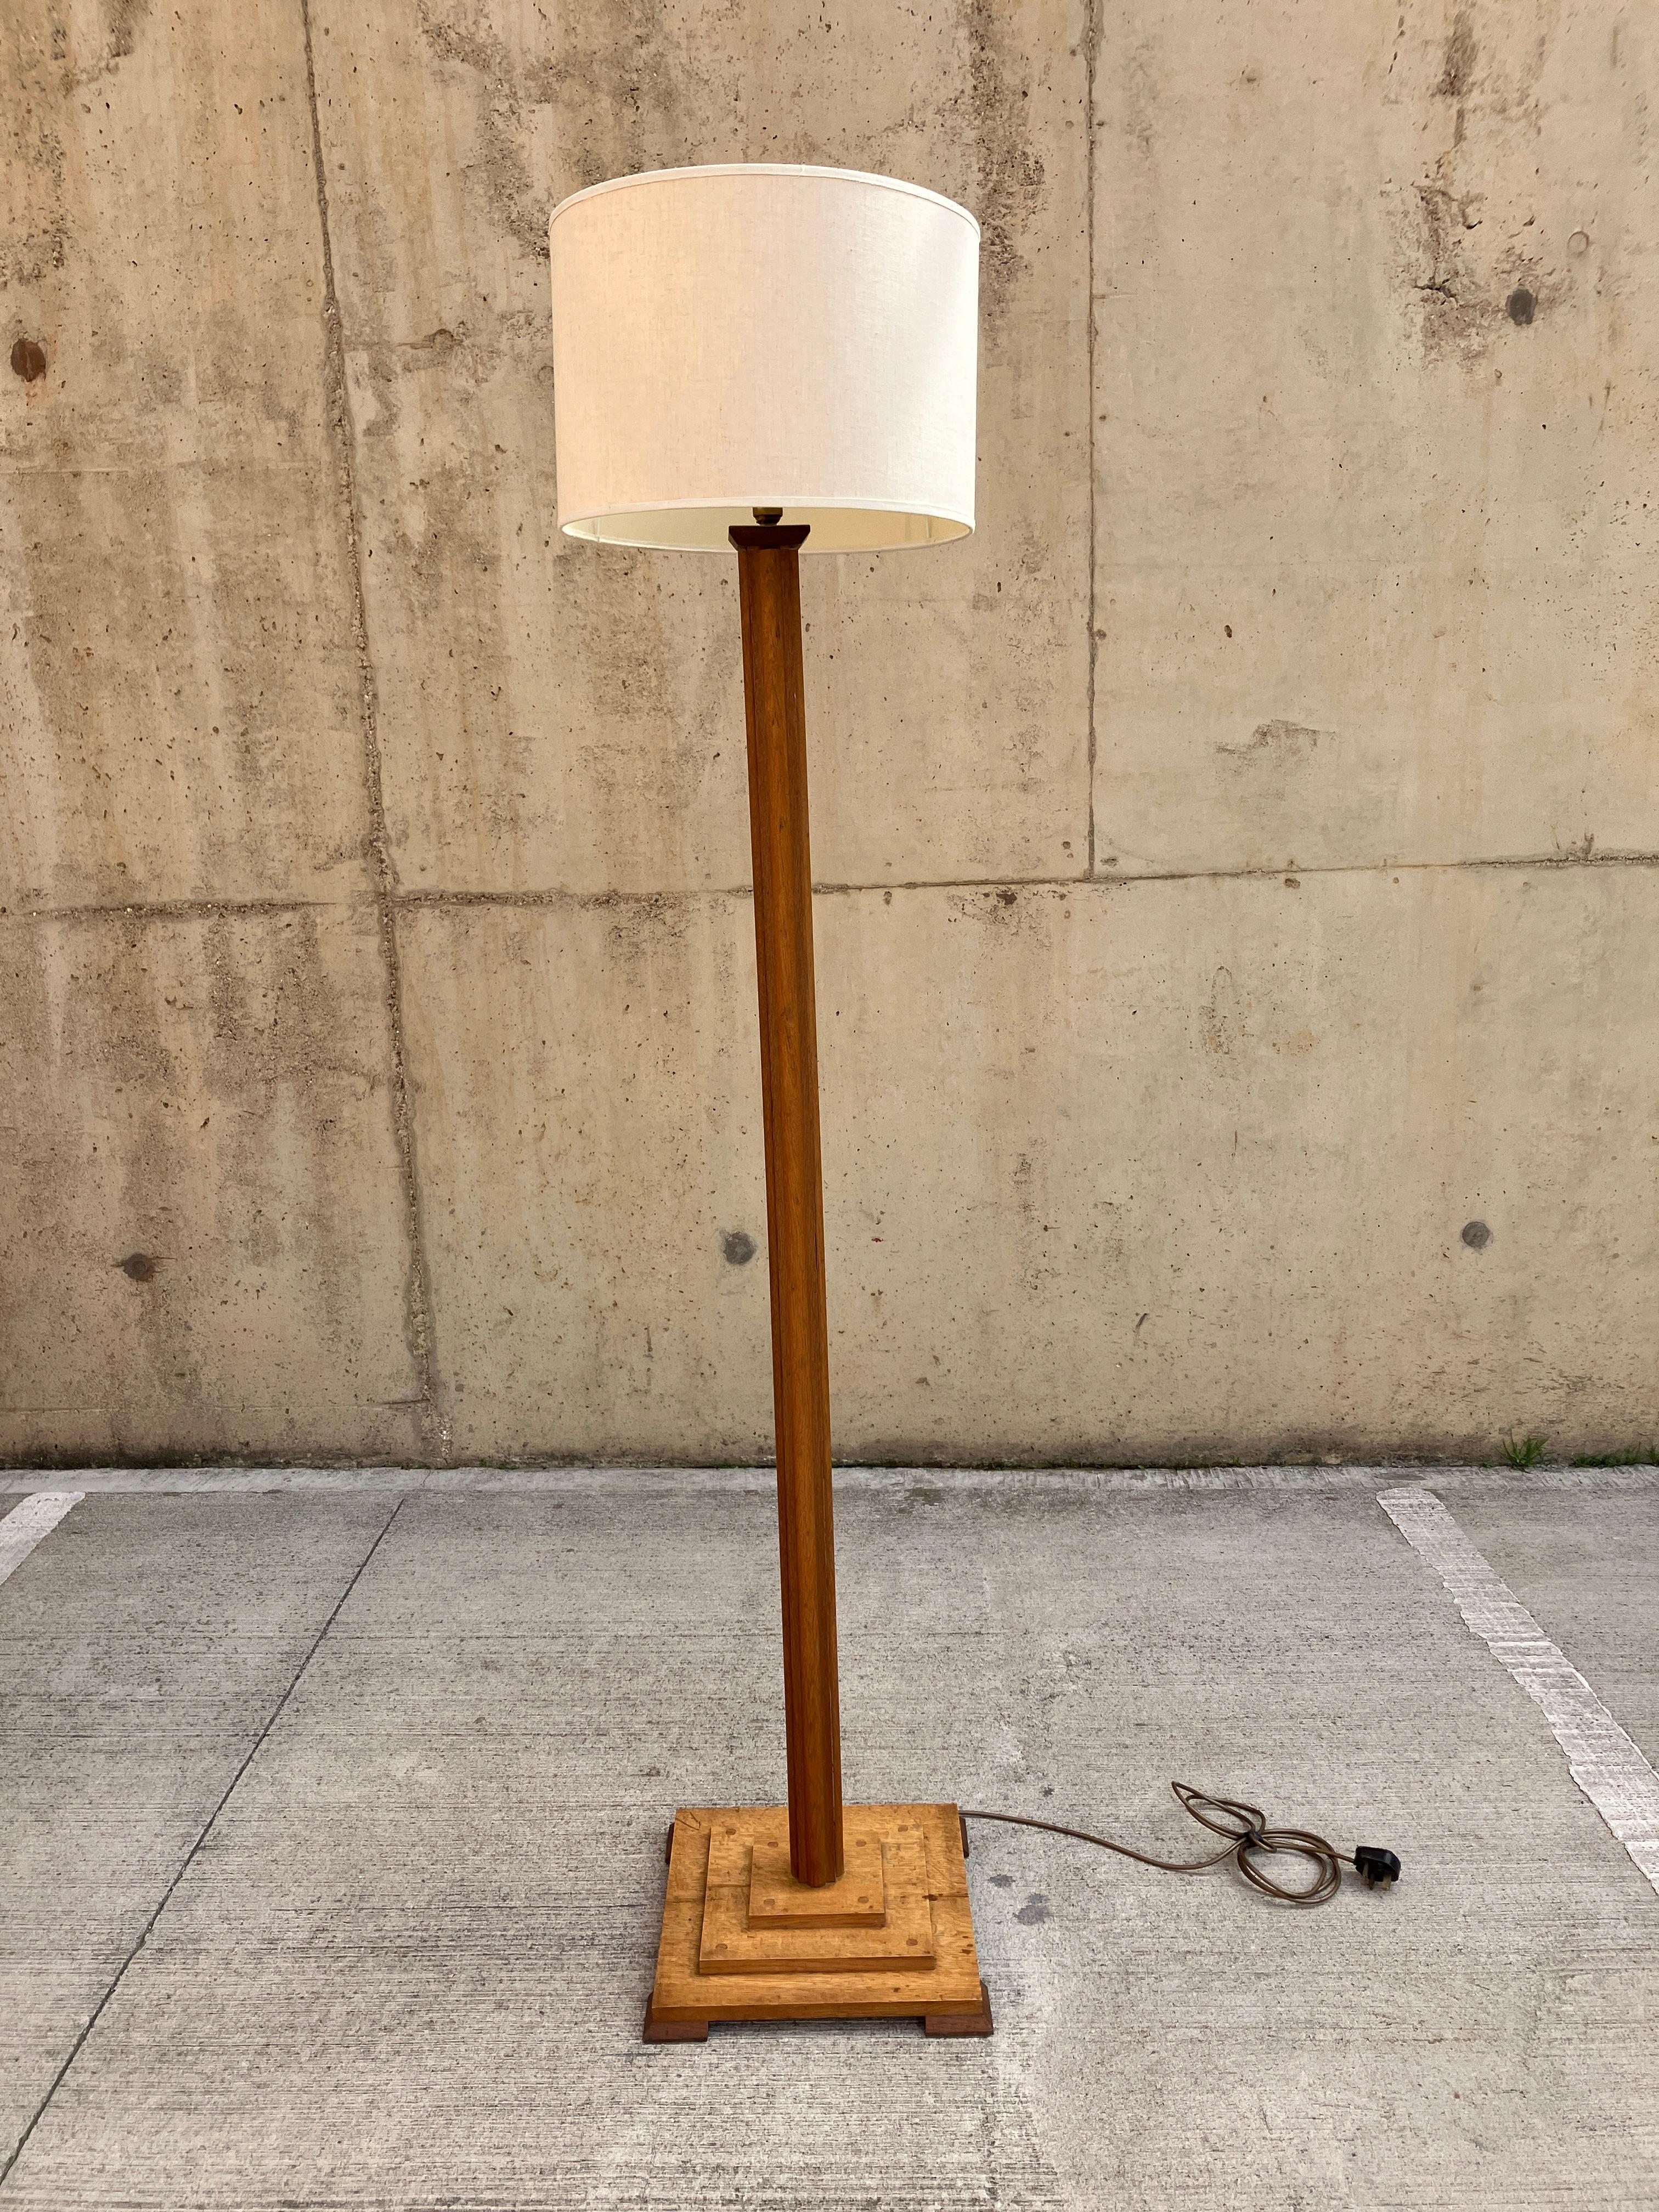 Une magnifique lampe standard en chêne massif. Ce lampadaire date de l'époque Art déco des années 1920. La lampe est très haute, 160 cm (sans l'abat-jour), et possède une élégante tige décorative. La lampe est fabriquée en chêne massif et présente